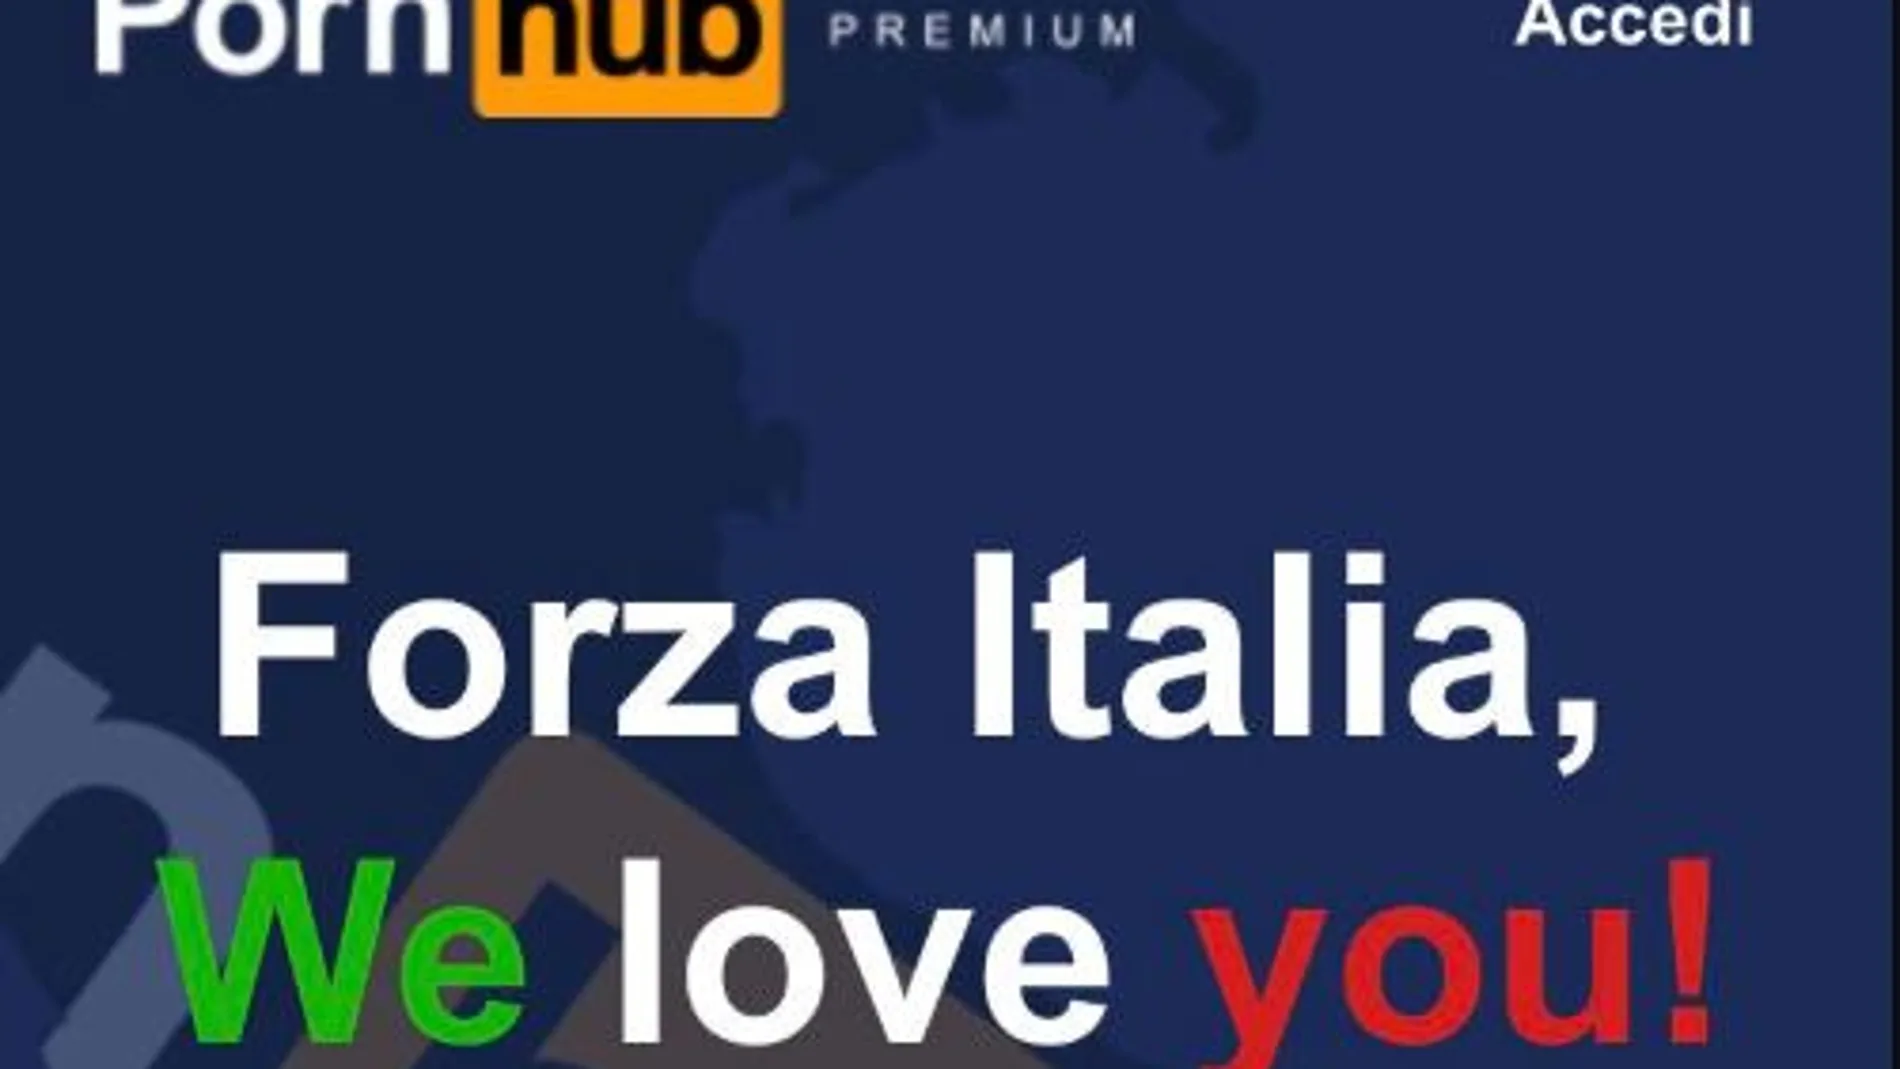 Lo mismo que en Italia los españoles podrán disfrutan de pornhub gratis hasta el 3 de abril